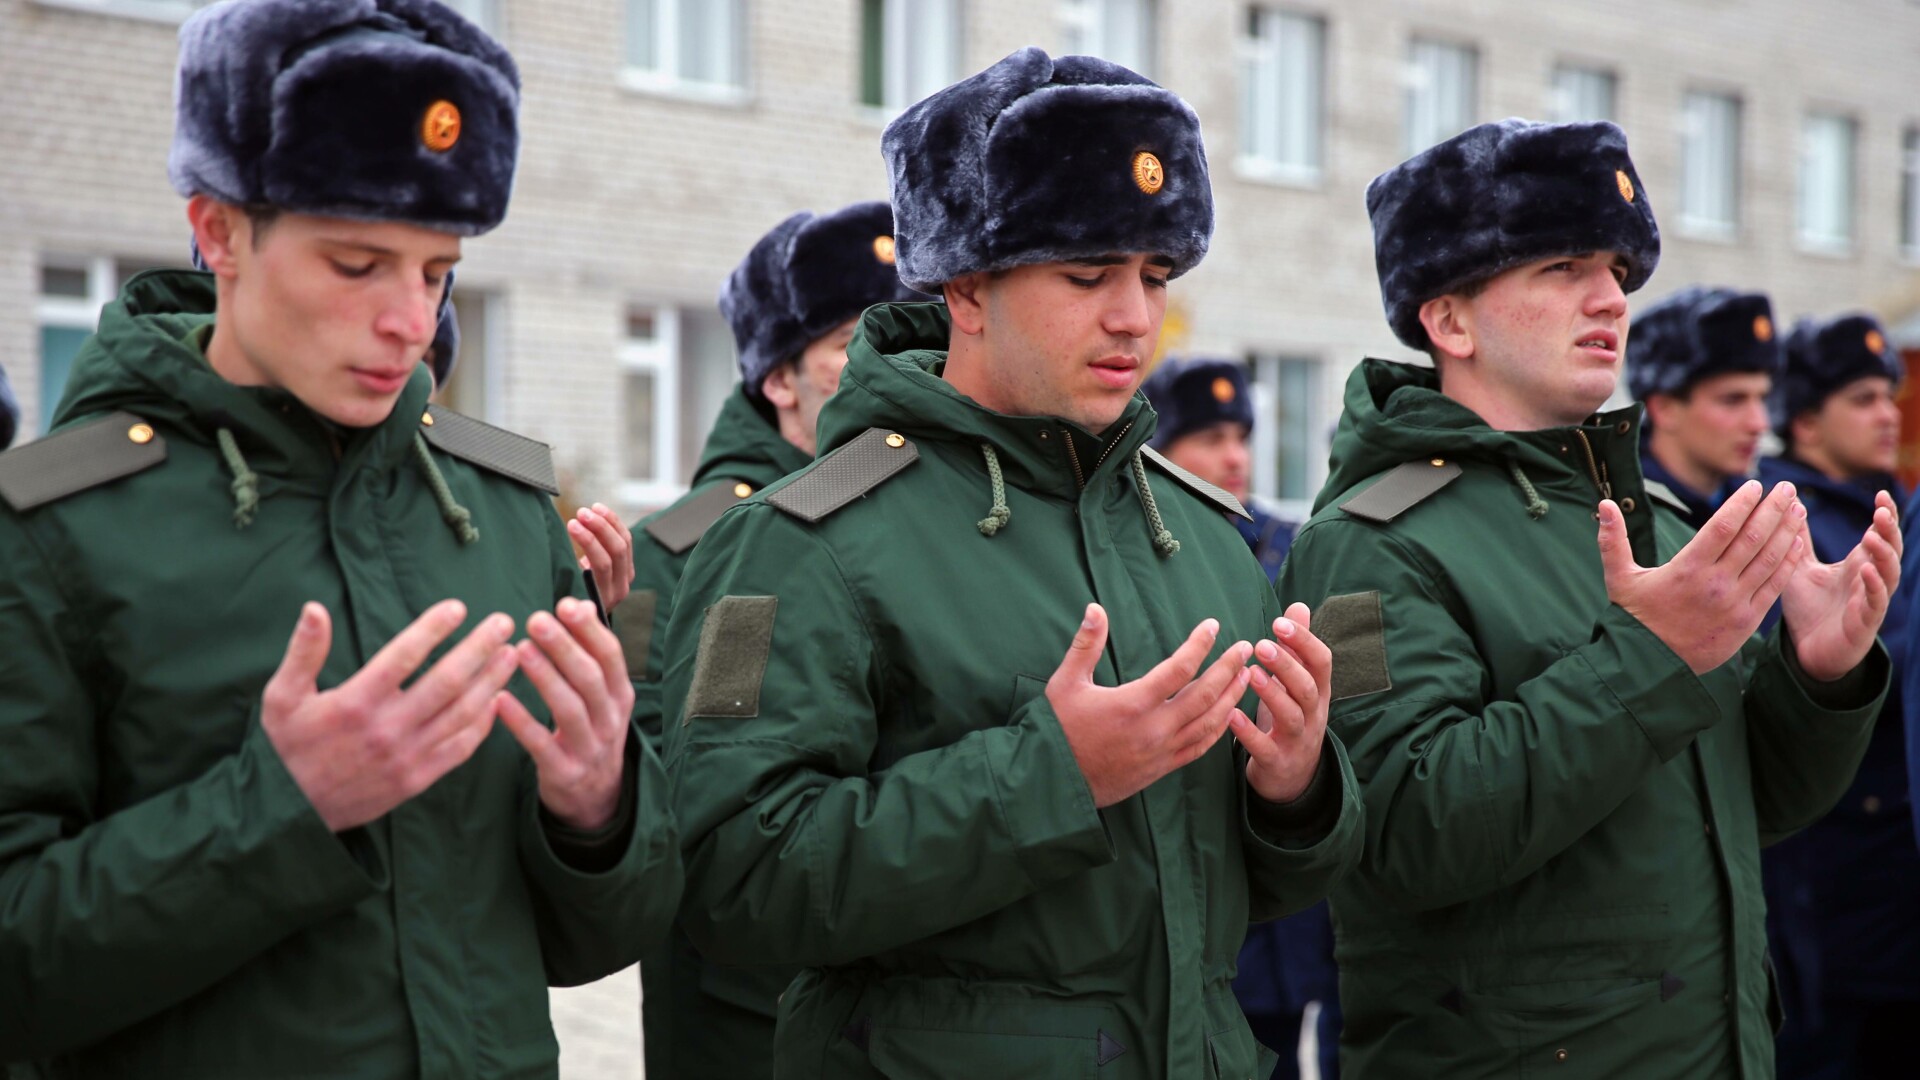 soldati rusia musulmani